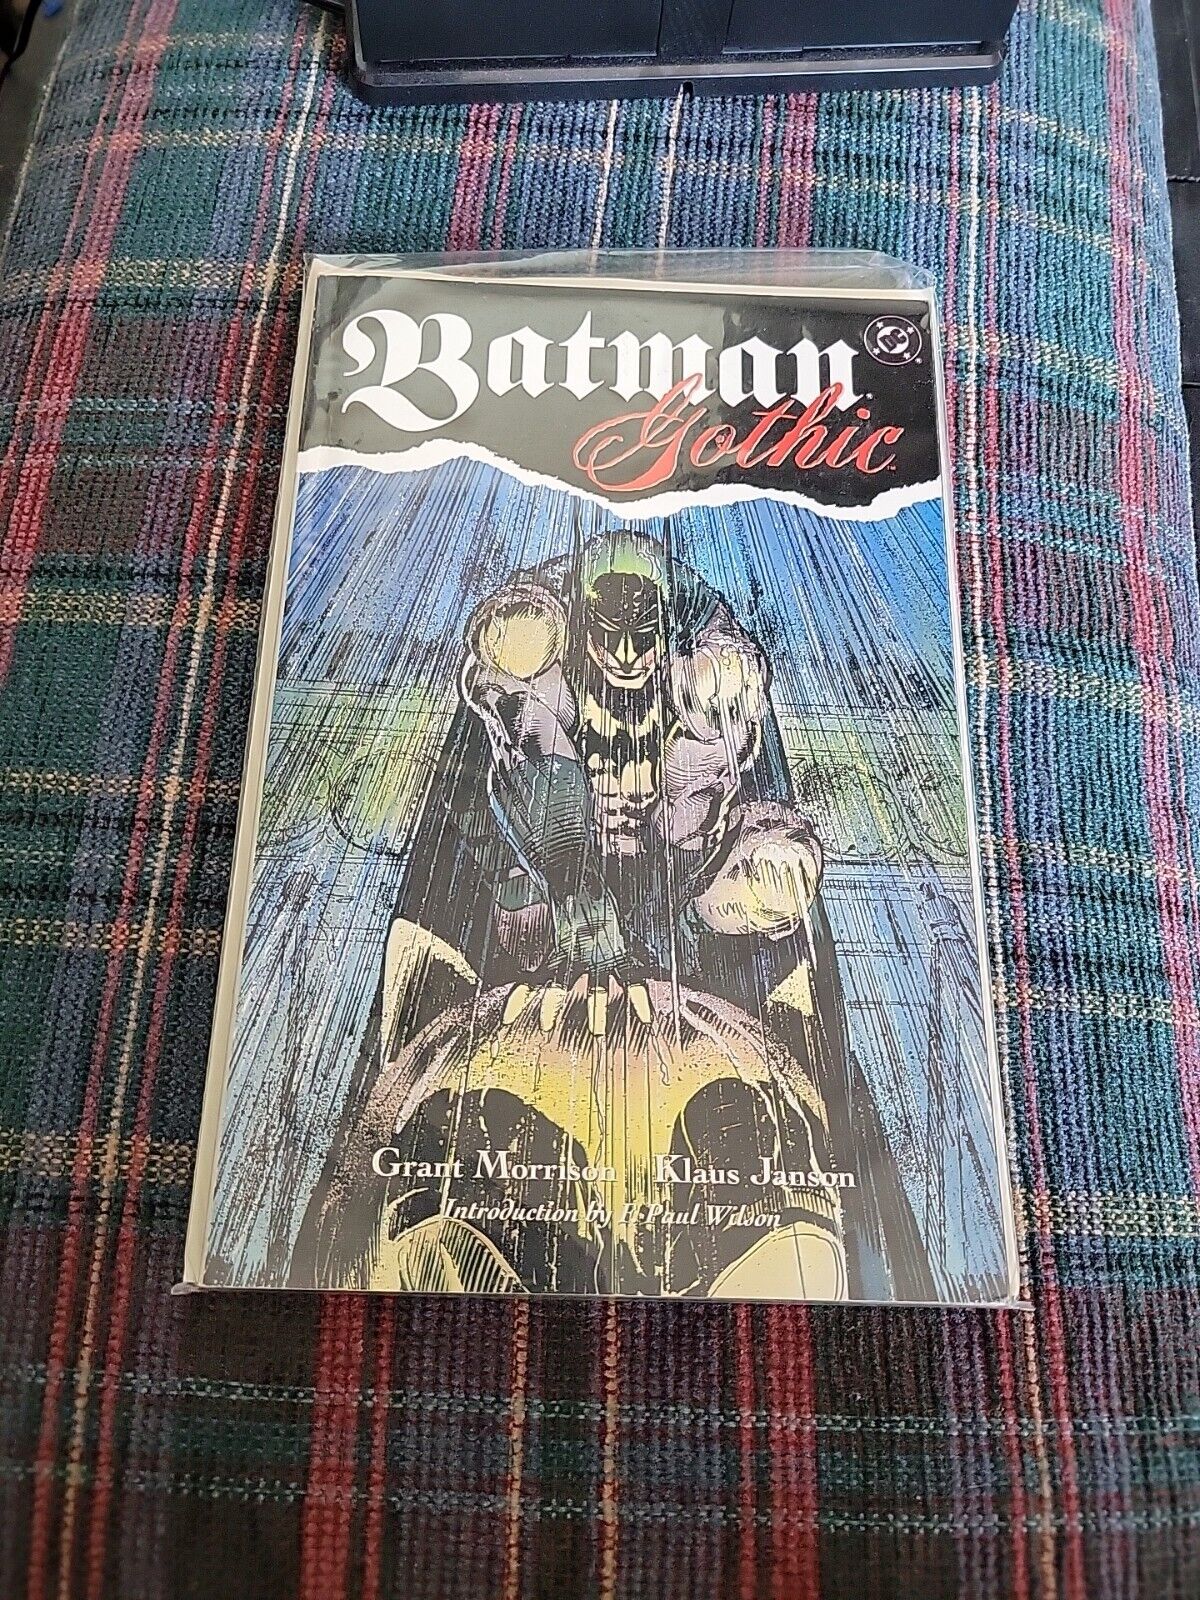 DC COMICS OOP BATMAN GOTHIC Collected TPB Grant Morrison Klaus Janson